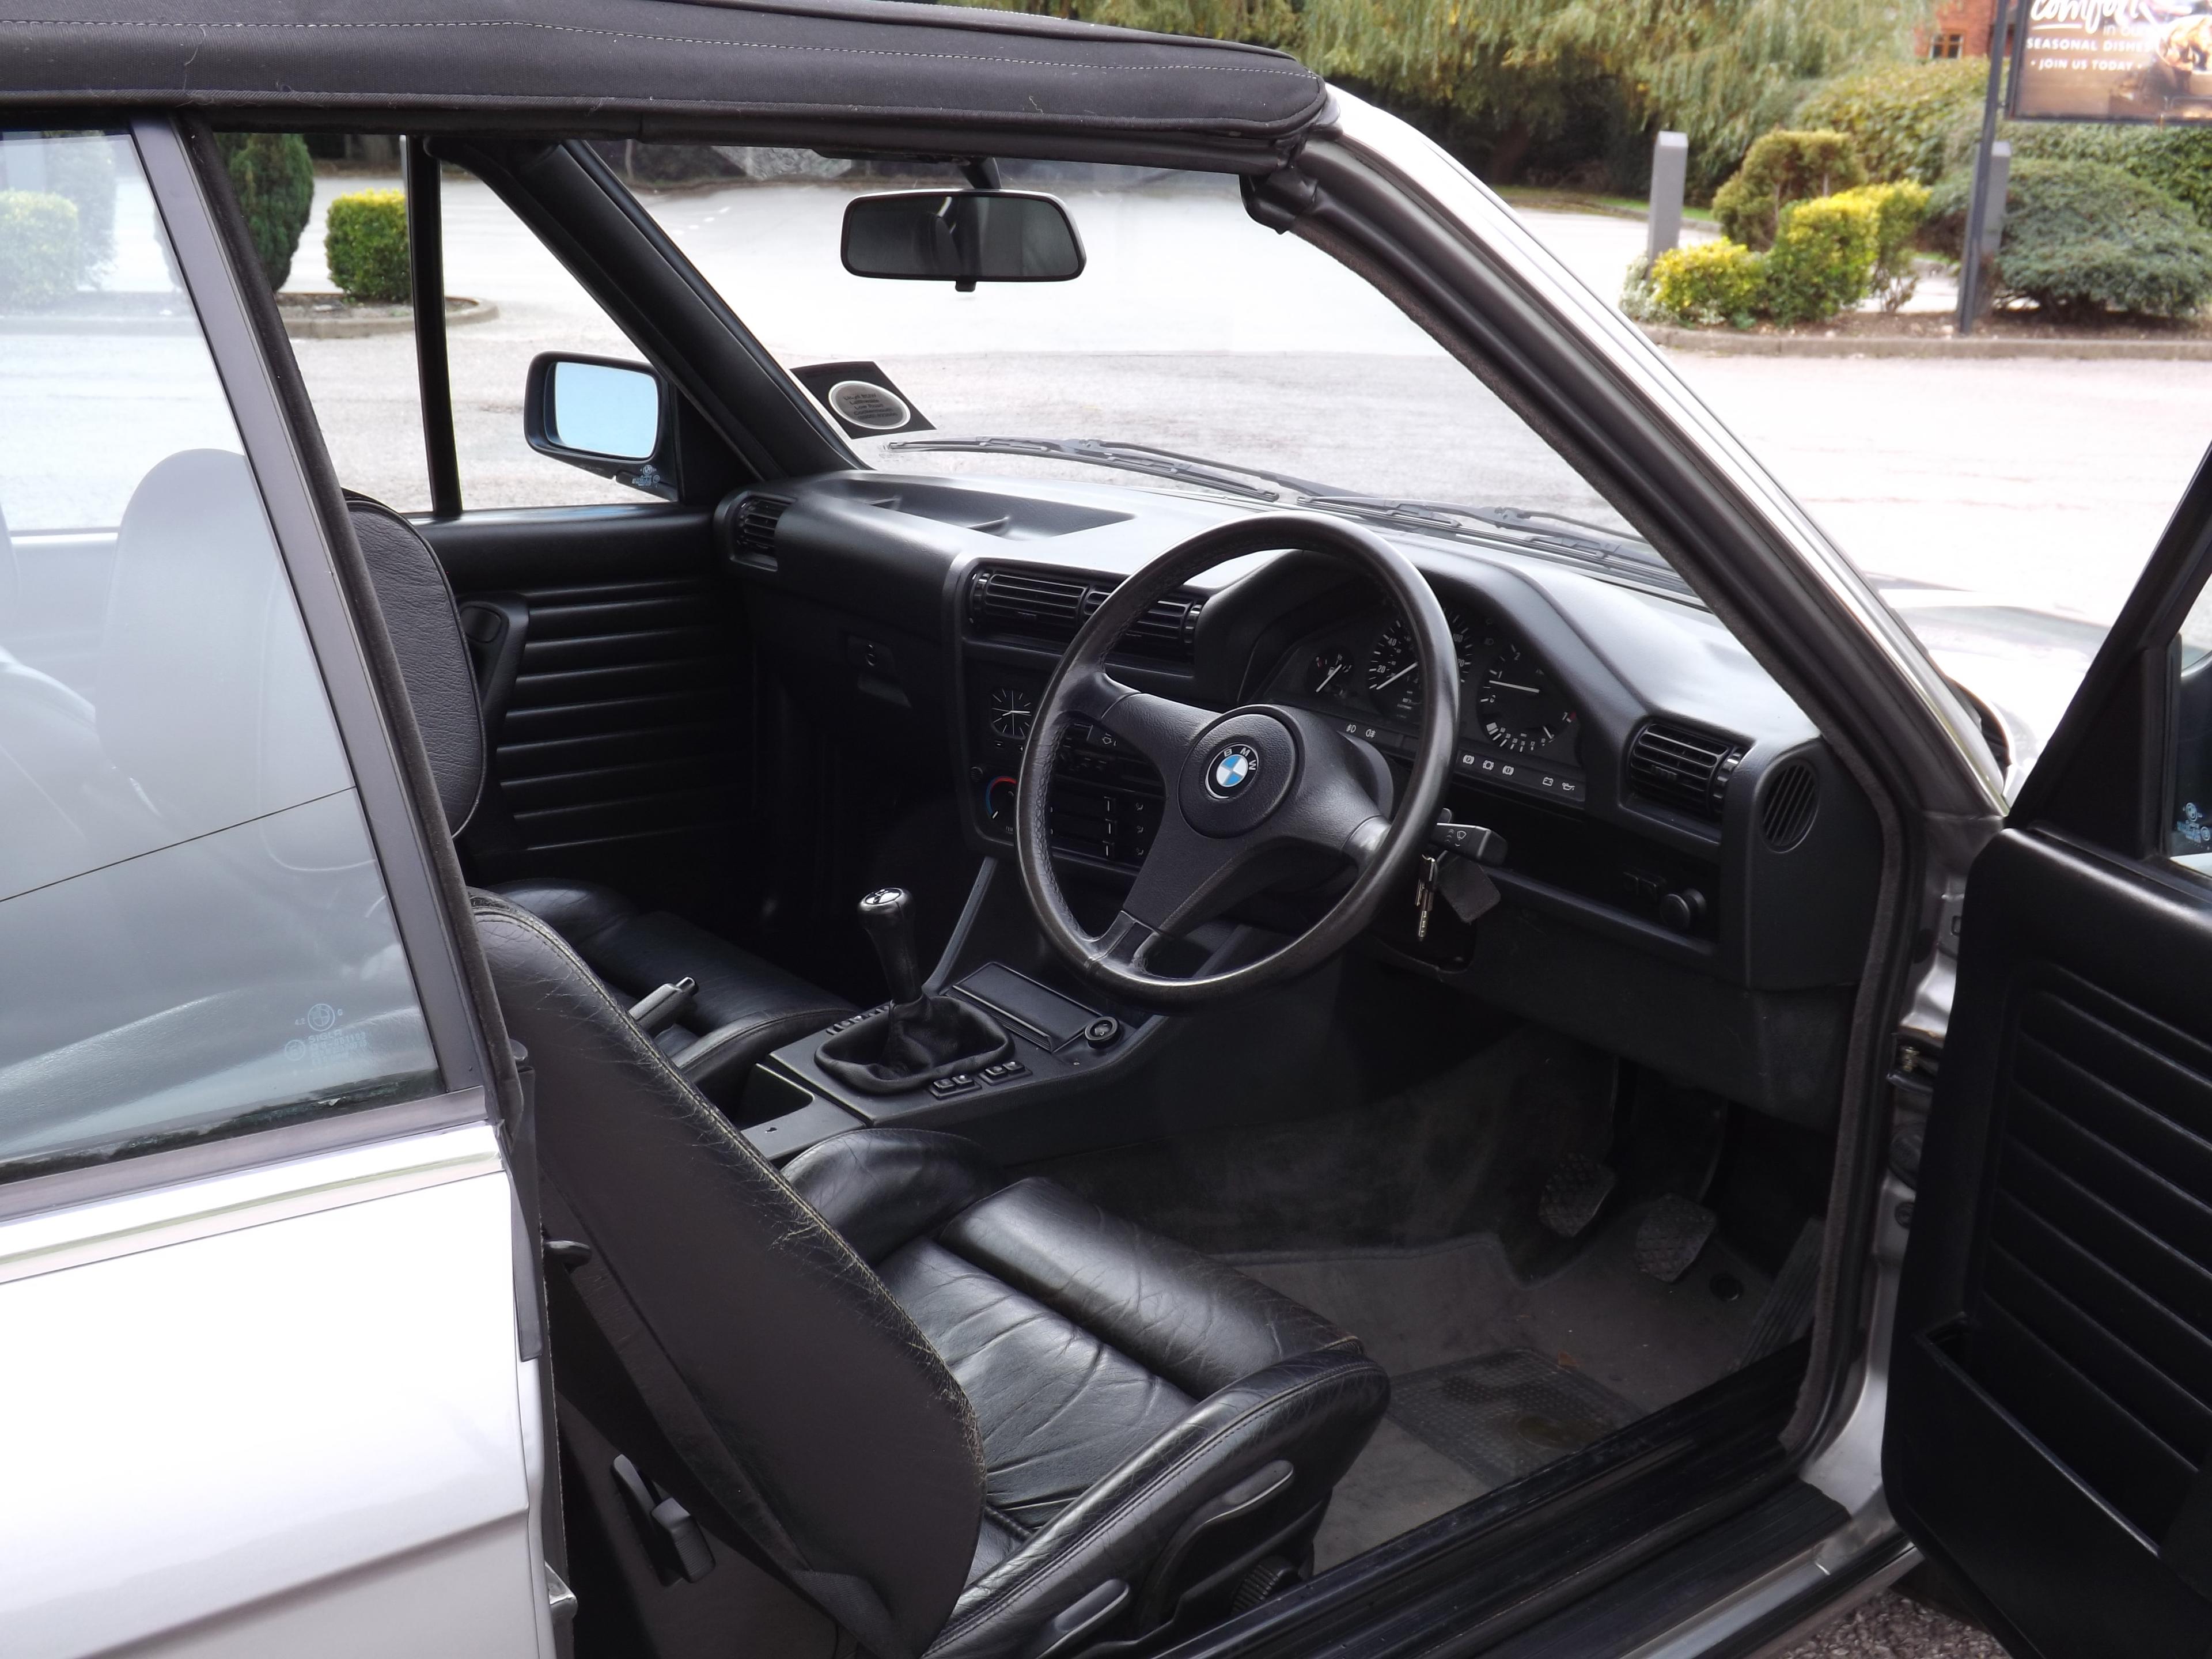 1986 BMW 325i (E30) Convertible